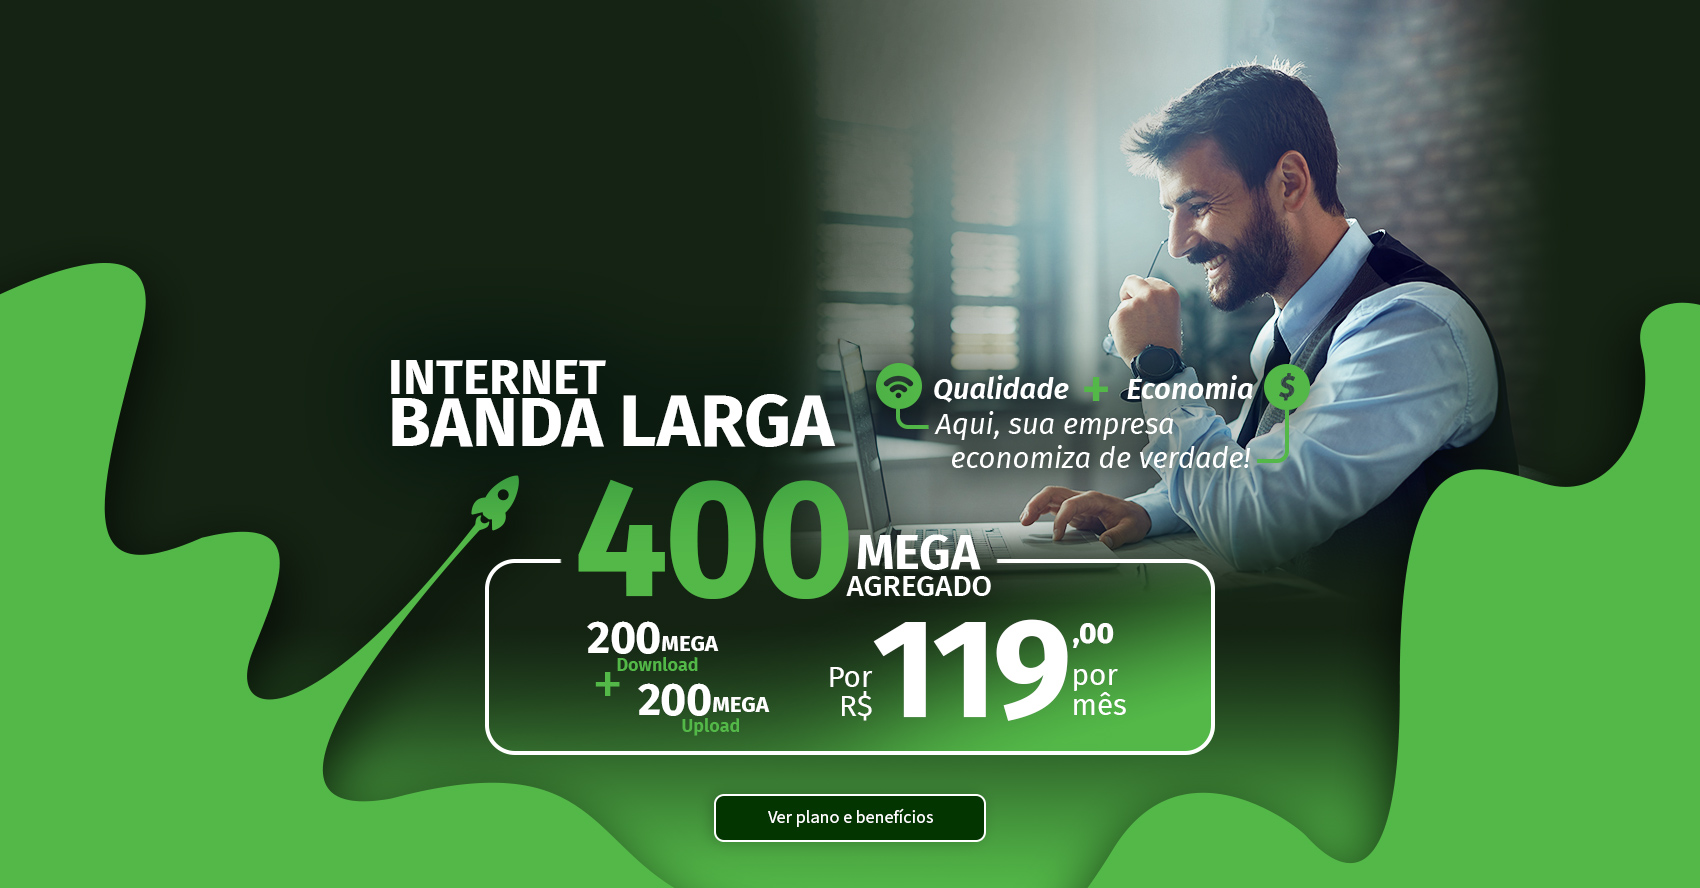 Internet banda larga empresarial simétrica